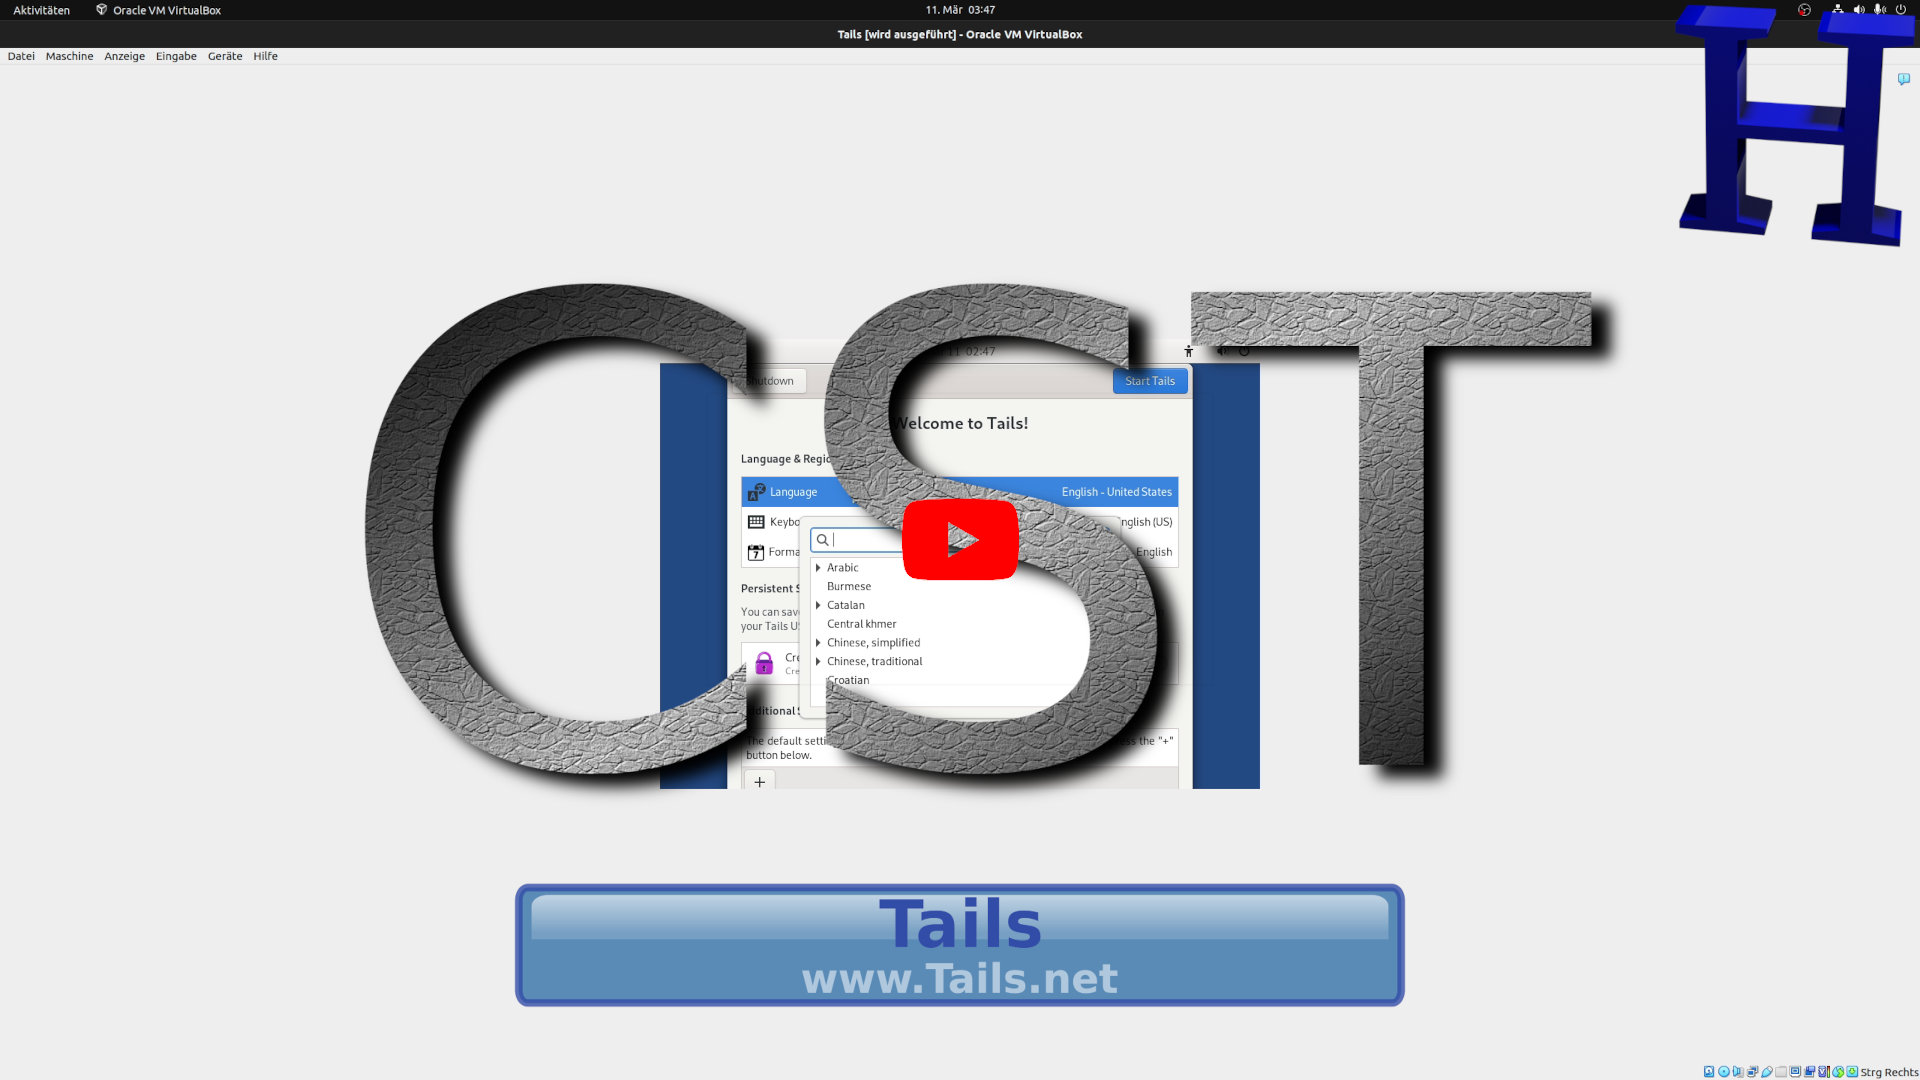 Tails 6.x 64 bit Live Betriebssystem zum anonymen Surfen im Internet